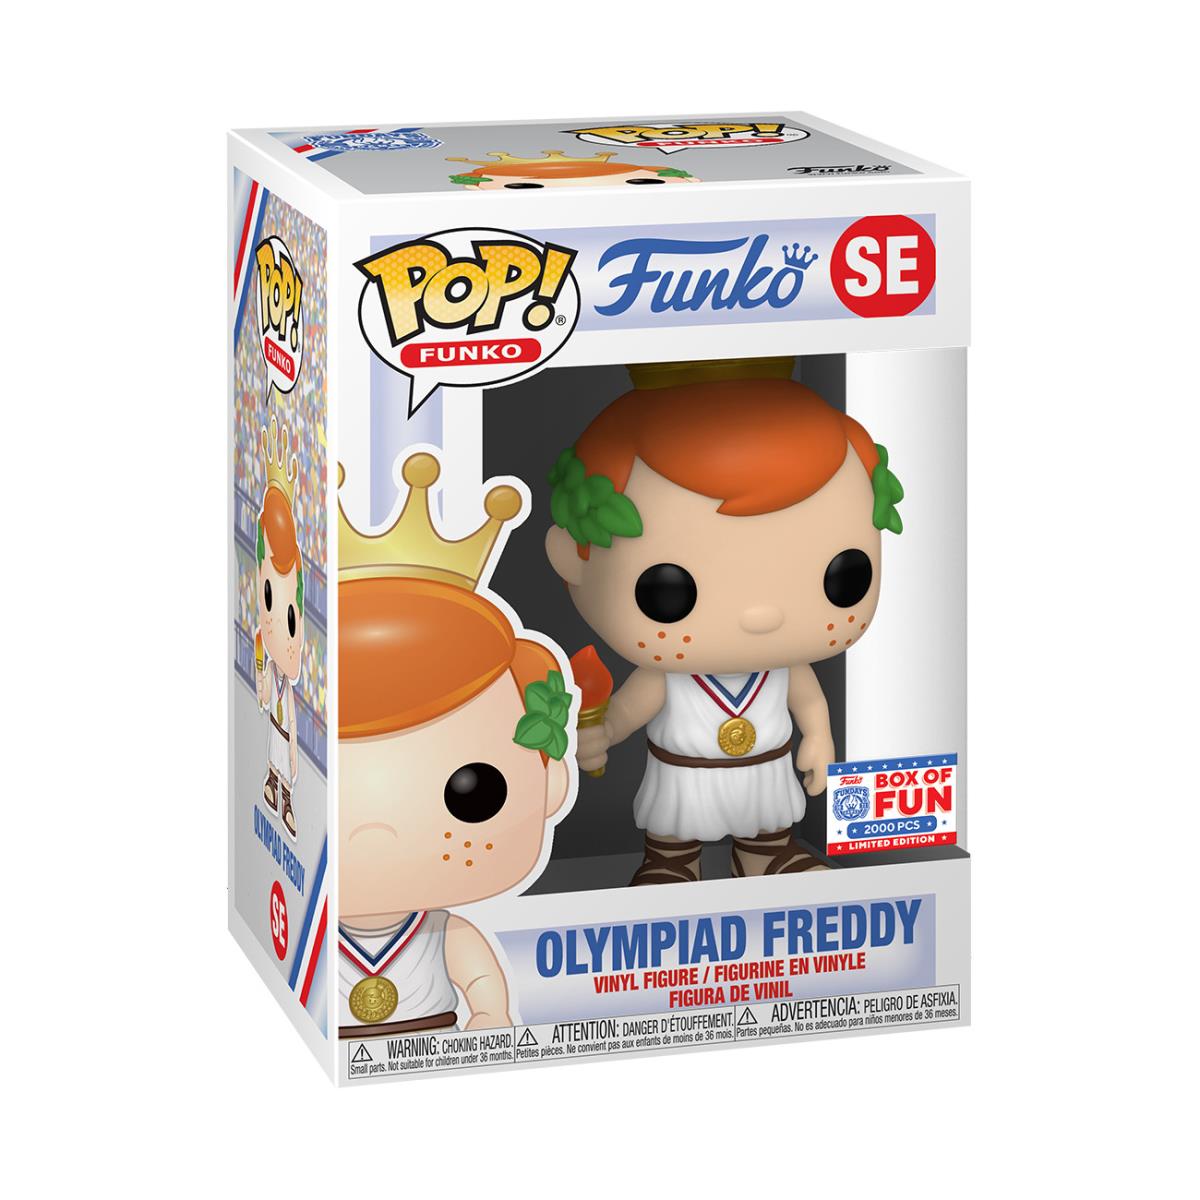 Funko Pop Vinyl: Freddy Funko - Olympiad Freddy - Funko